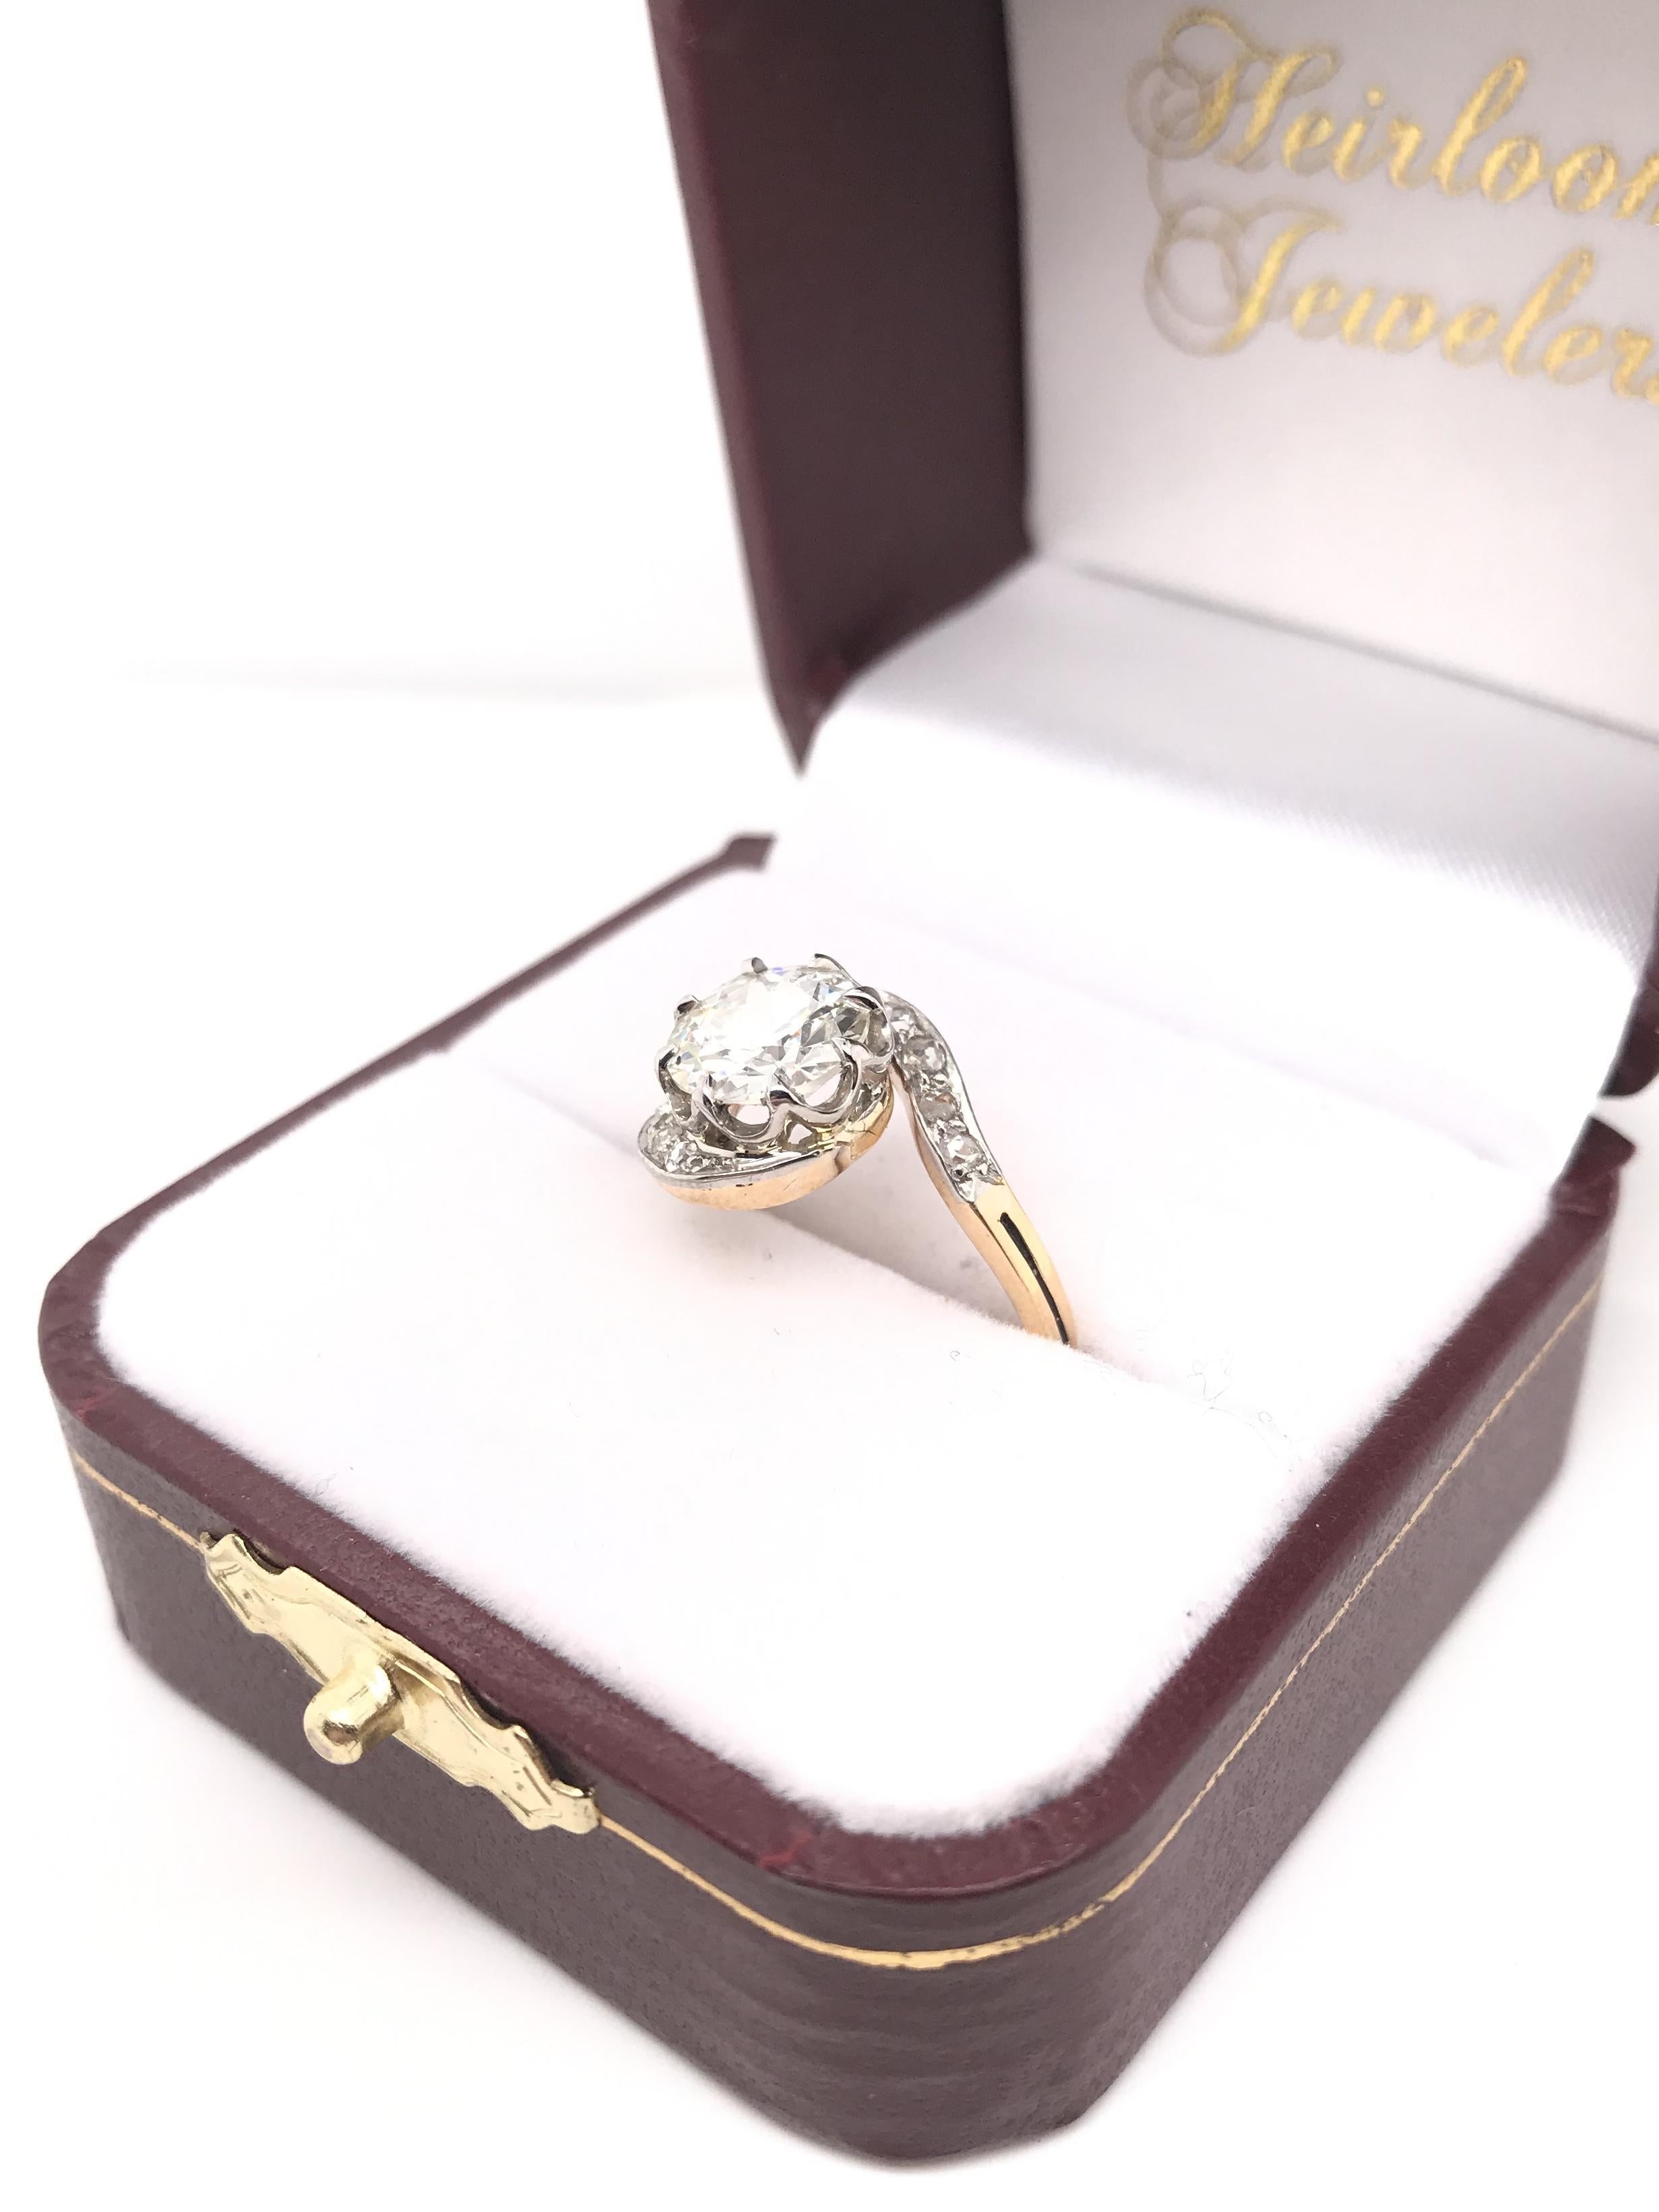 Antique Art Nouveau 1.66 Carat Diamond Ring For Sale 9